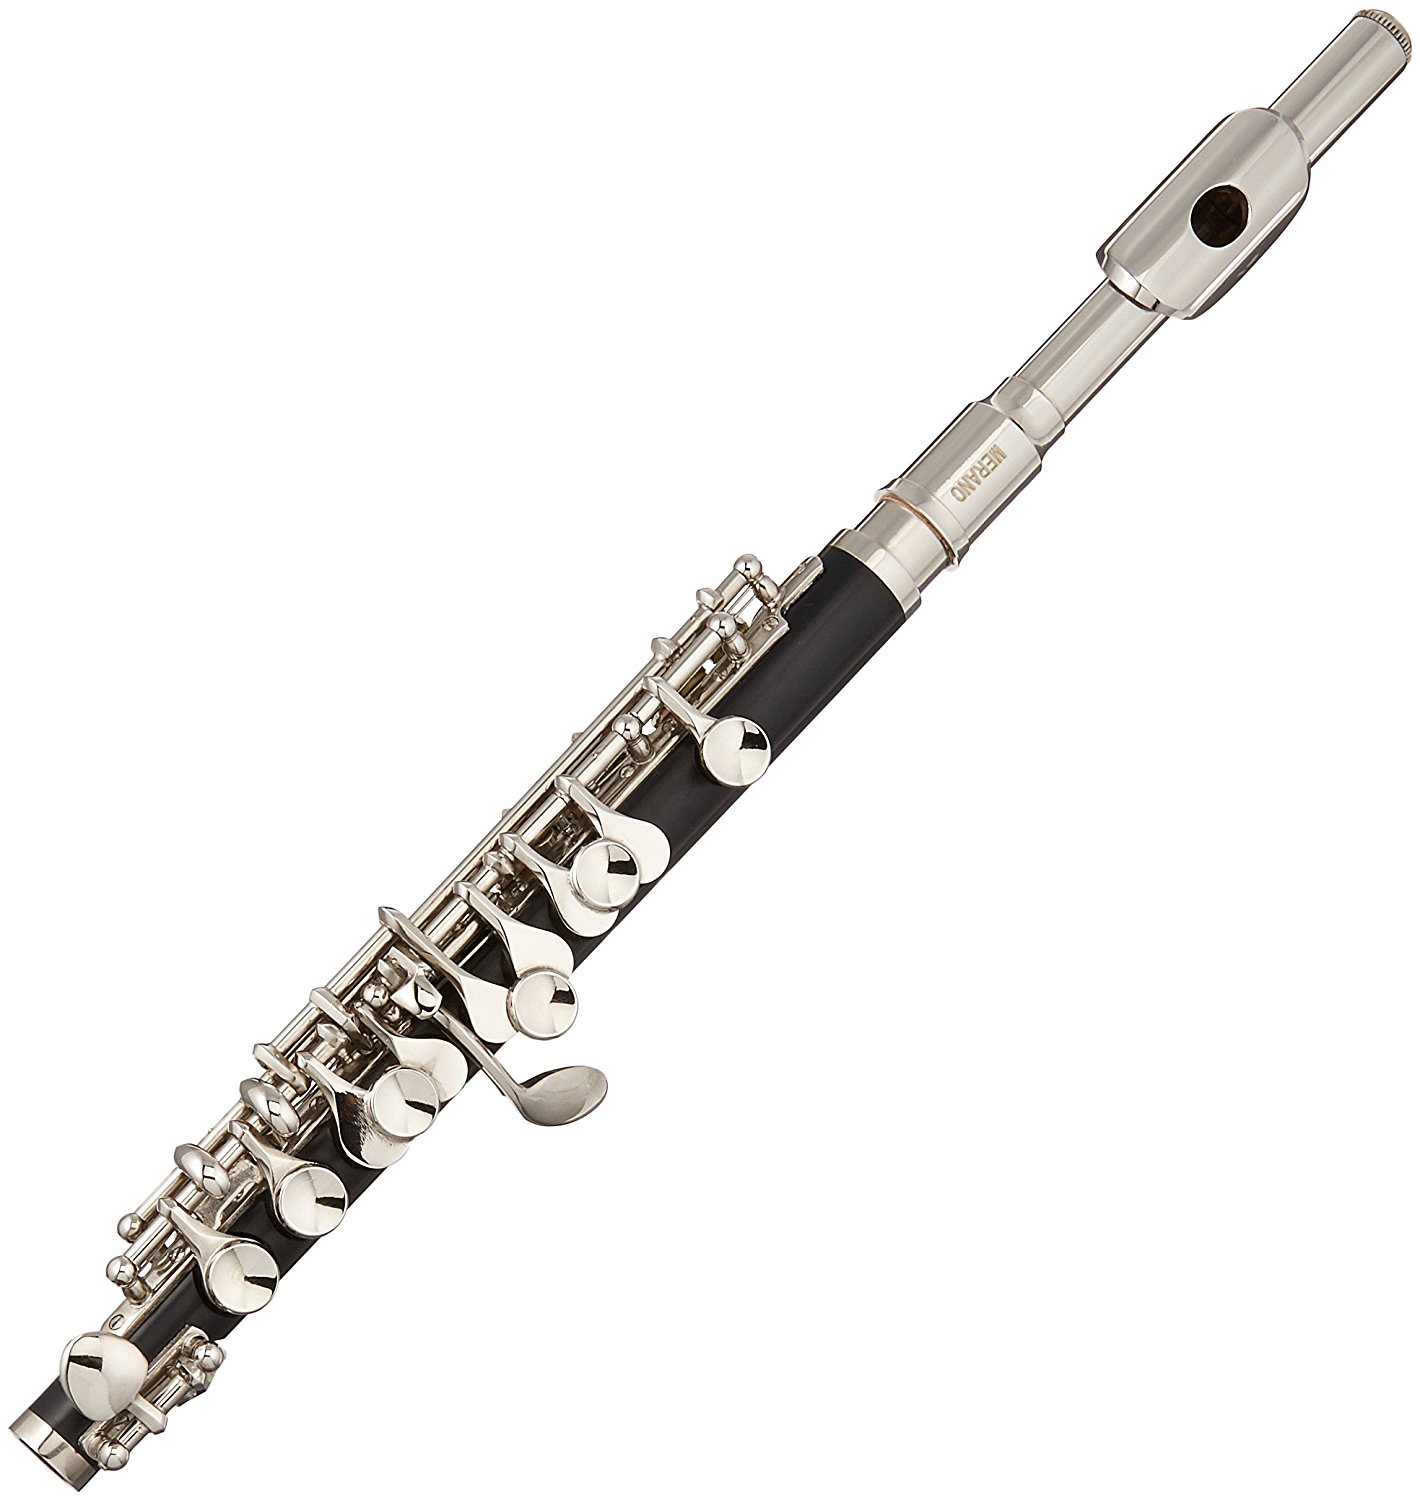 A picture of a shiny silver piccolo